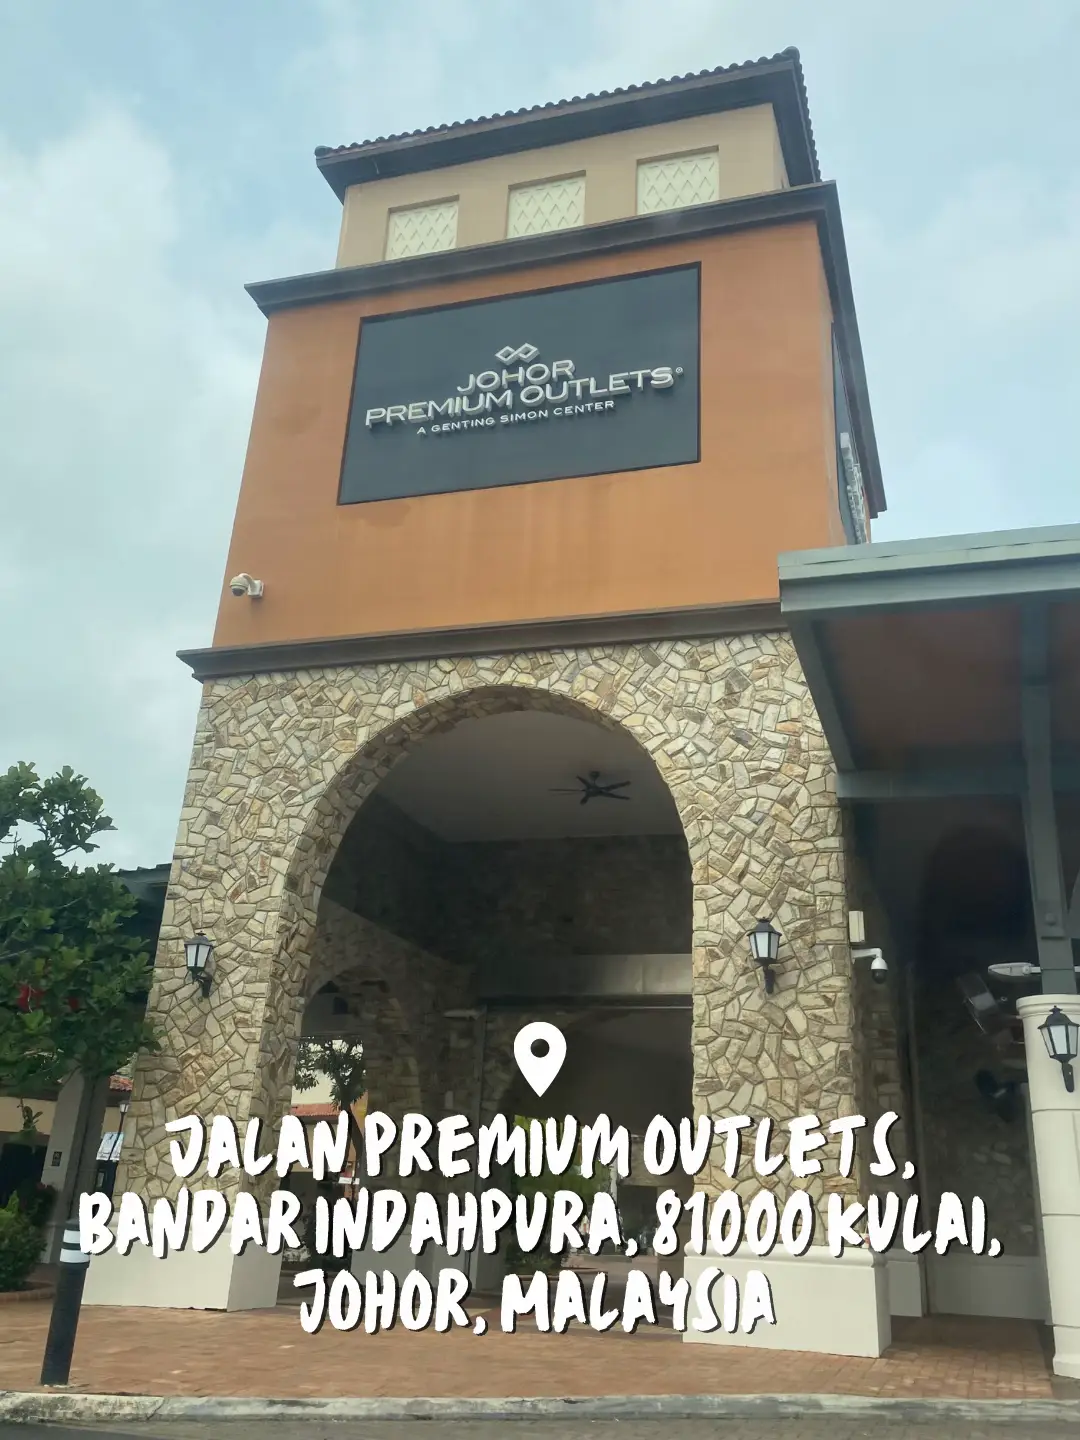 Photos at Johor Premium Outlets - Indahpura - Kulai, Johor